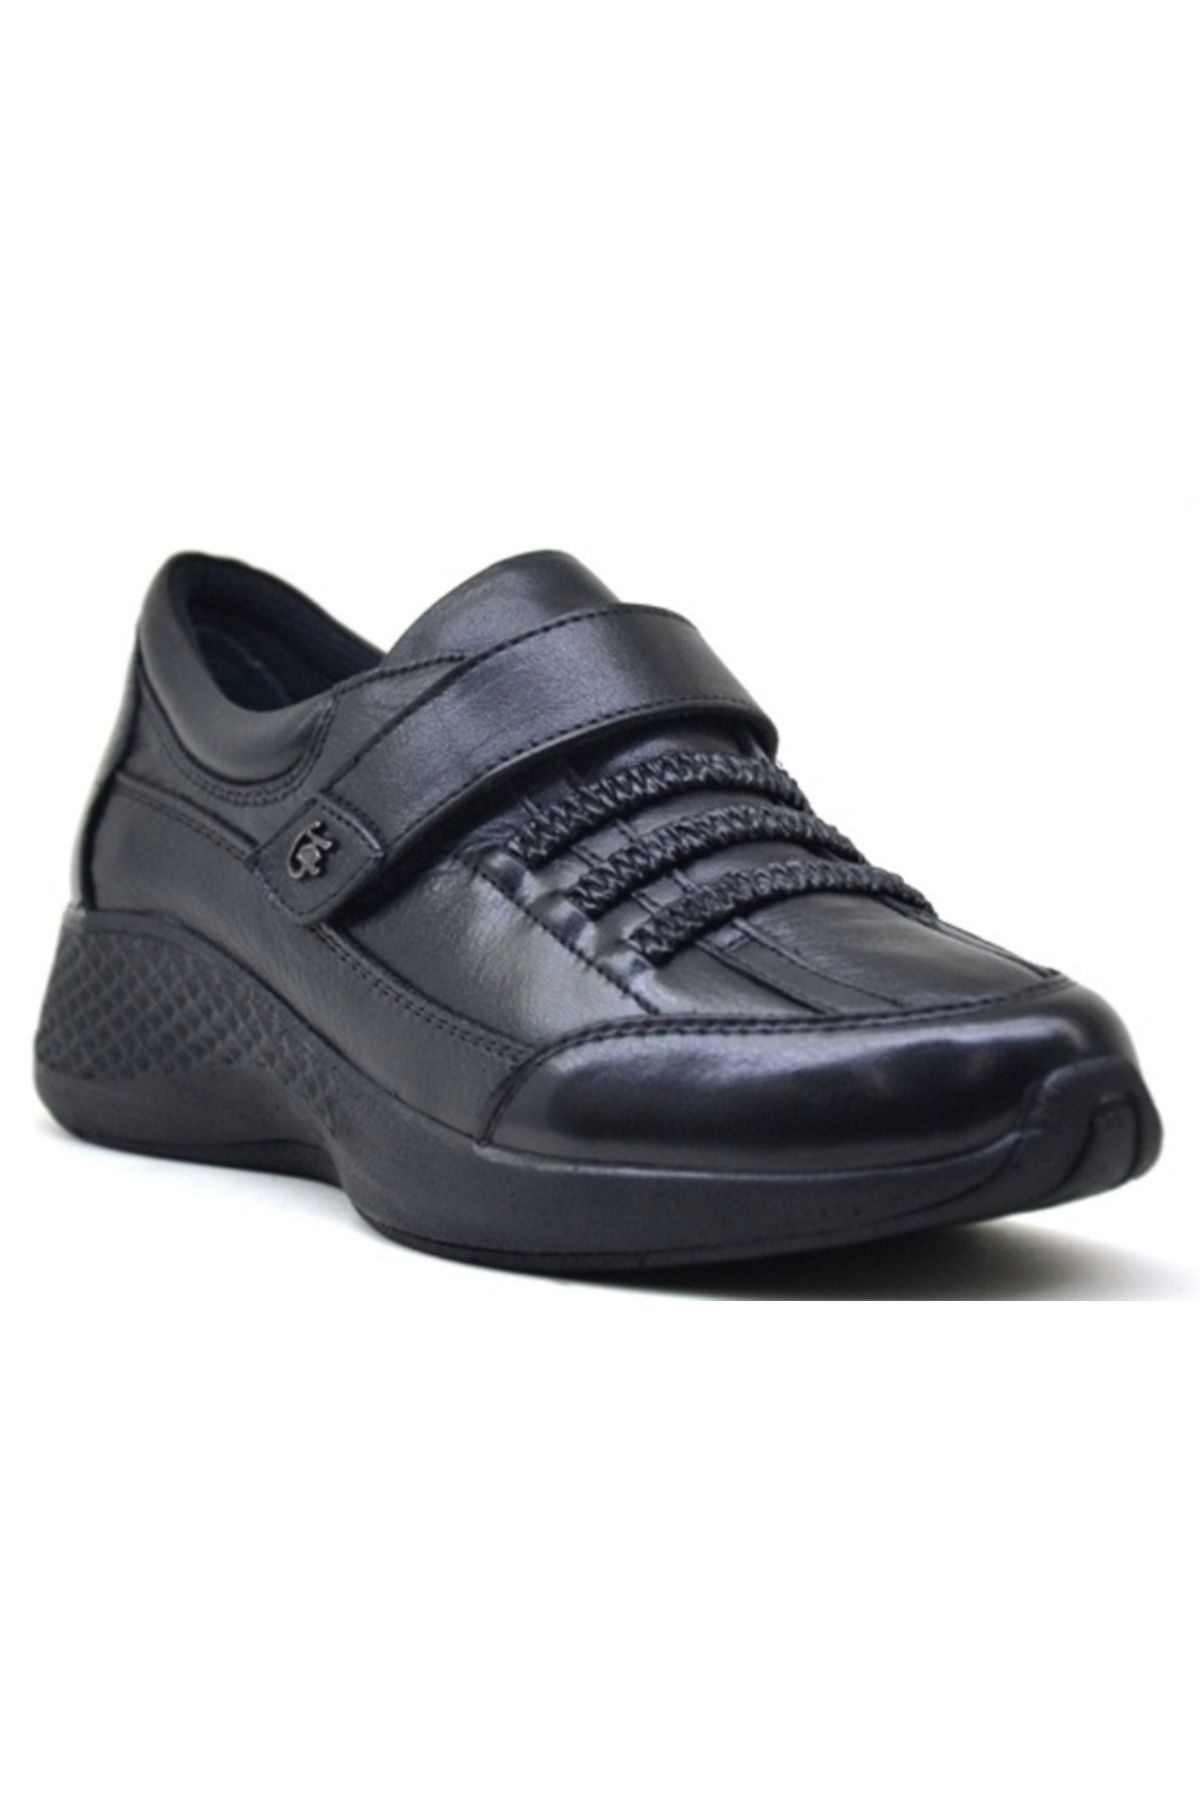 KİNG PAOLO King Paolo U6592 Shoeflex Komfort - Siyah - Kadın Ayakkabı,deri Ayakkabı